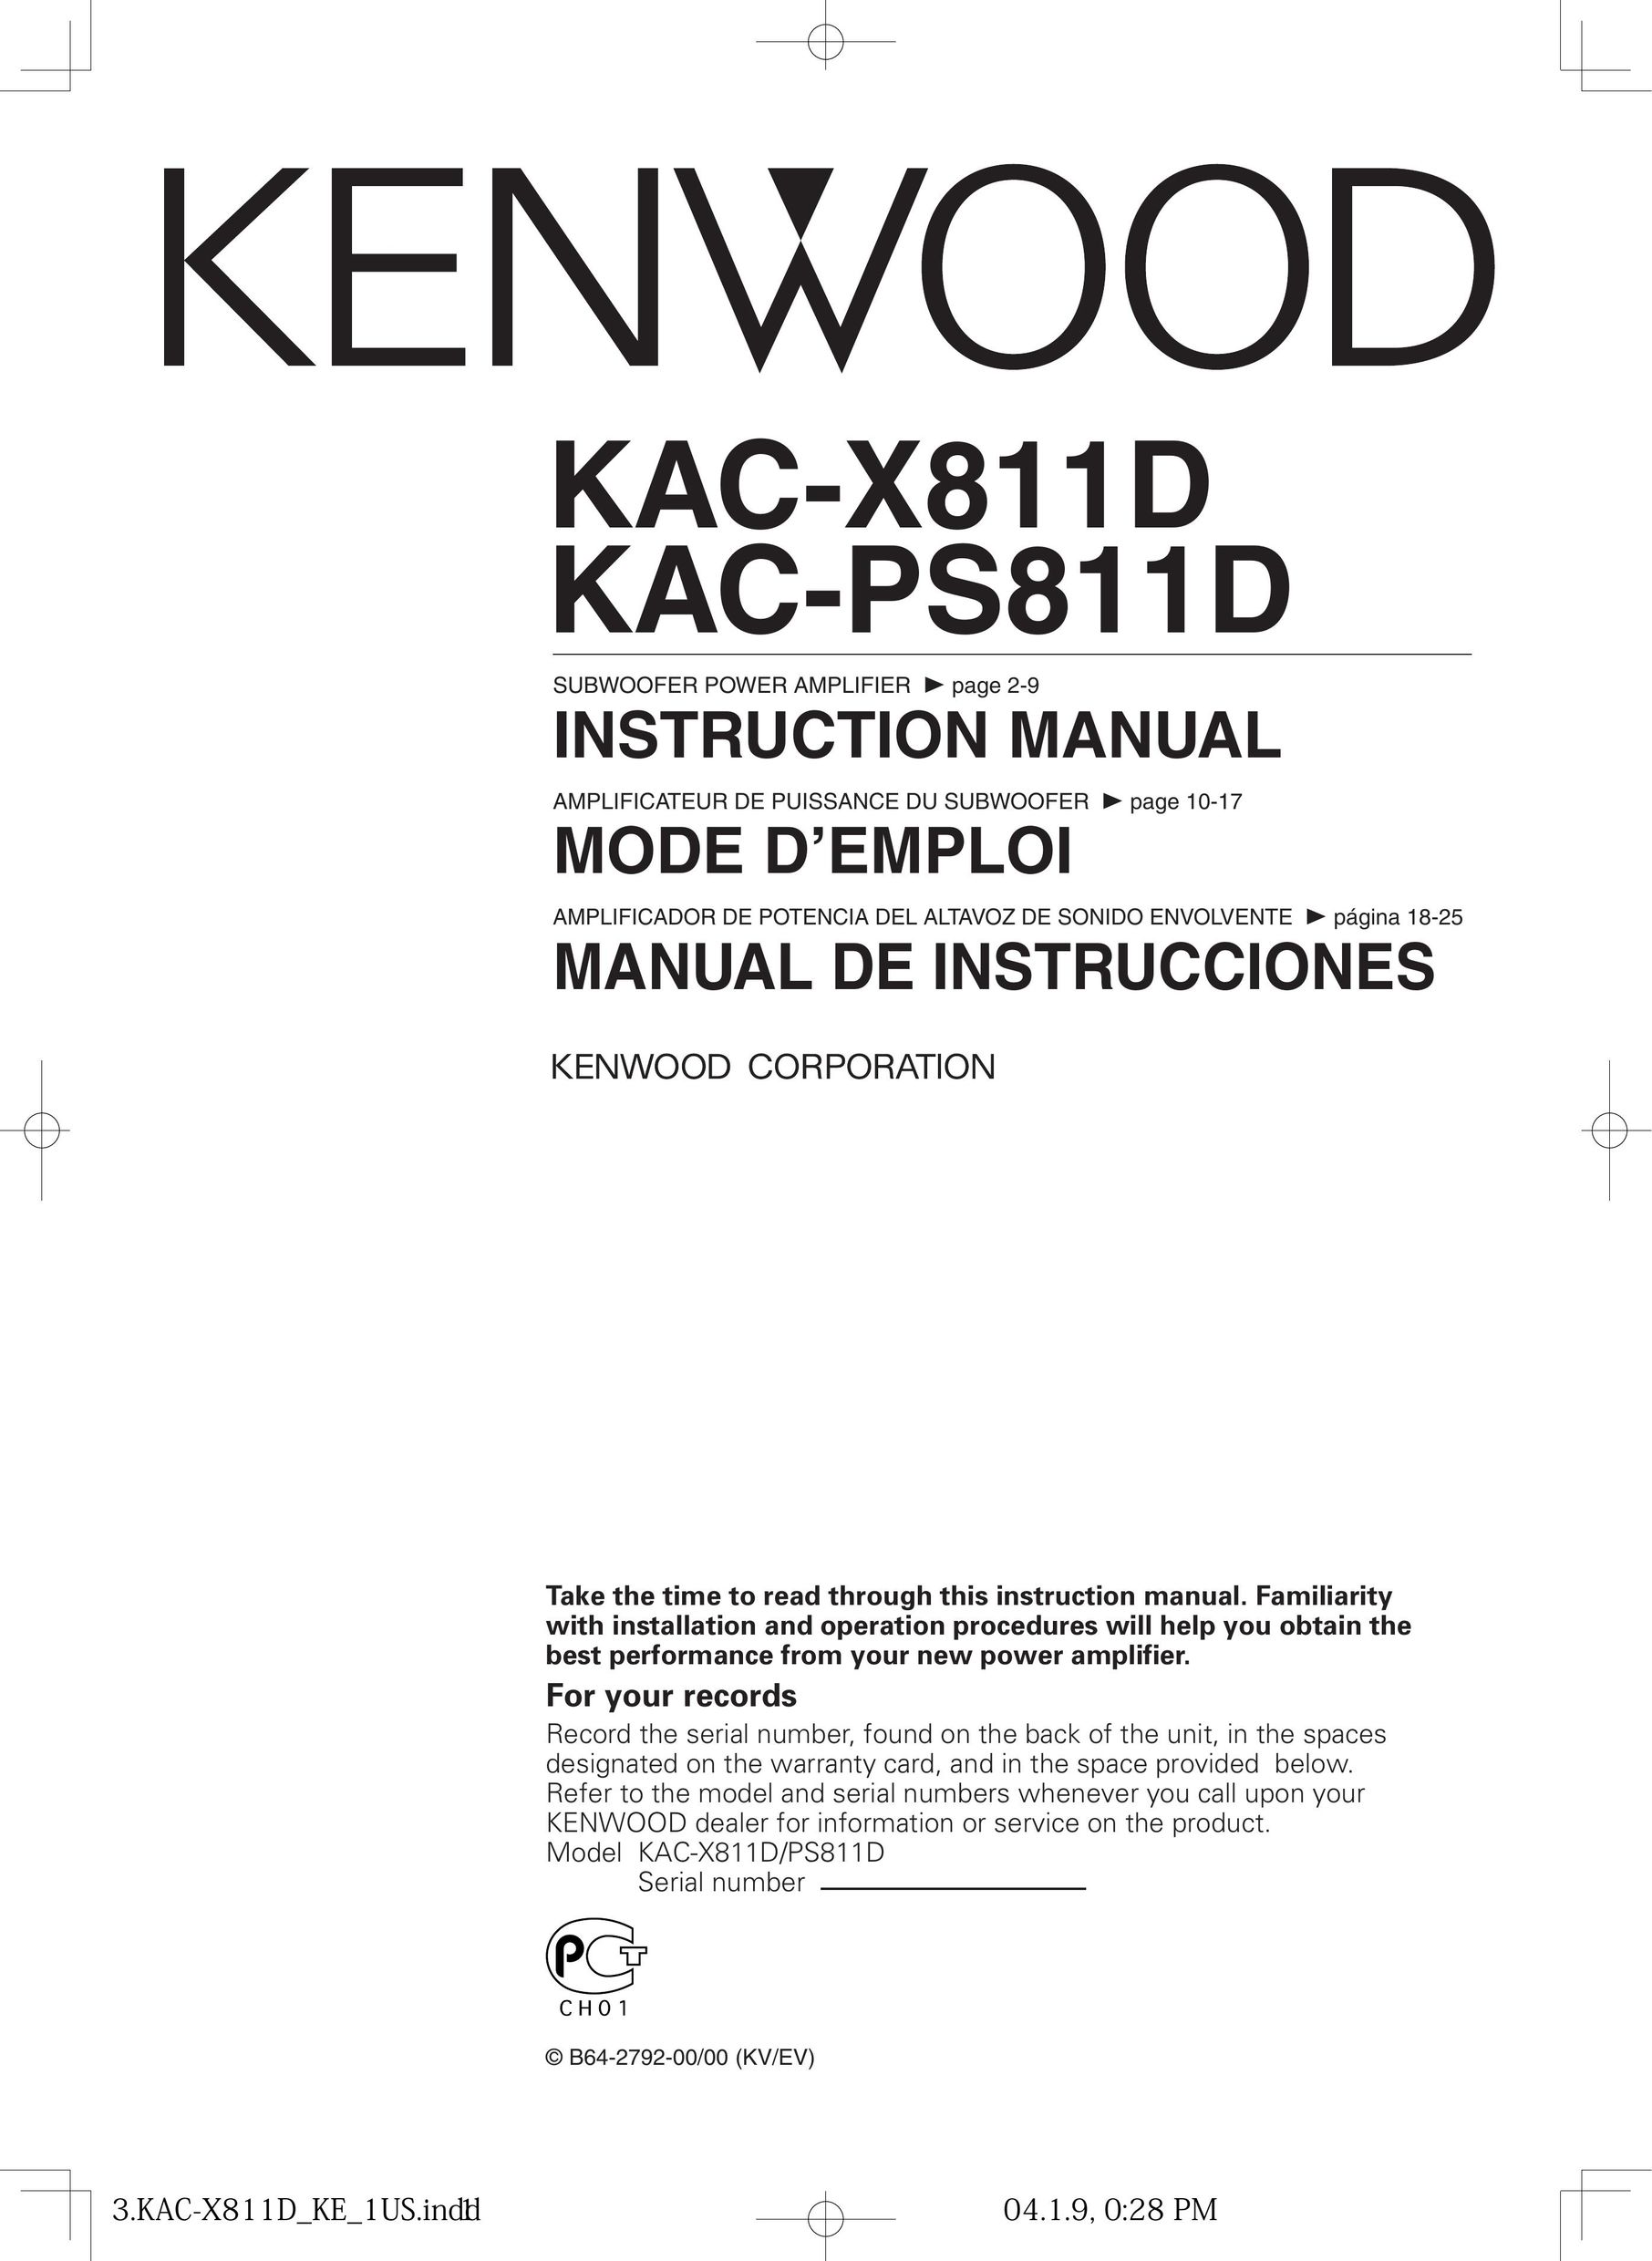 Kenwood KAC-PS811D Car Amplifier User Manual